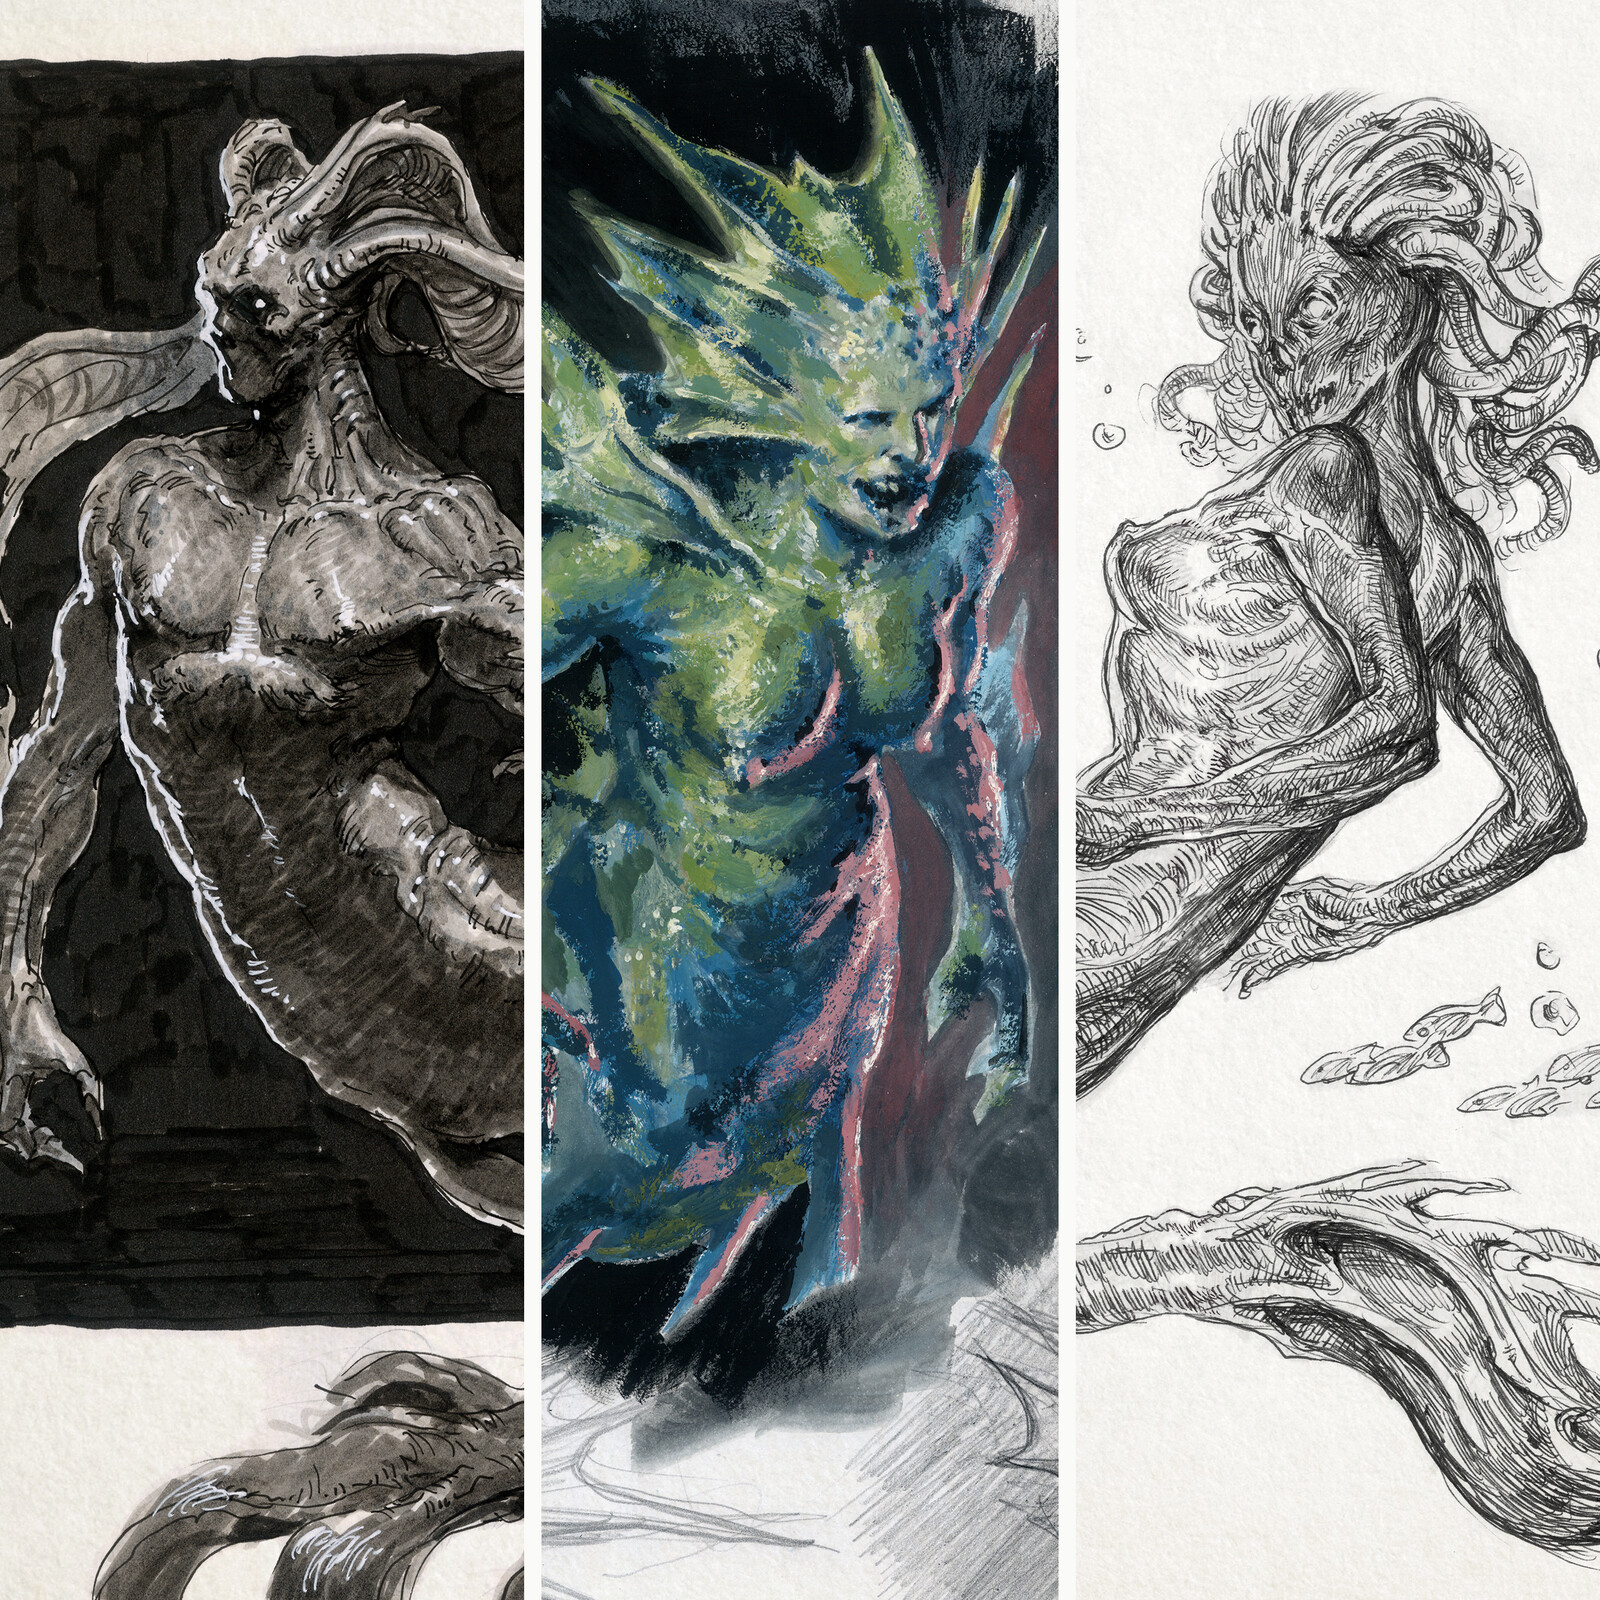 Sketchbook: Creatures of the Depths